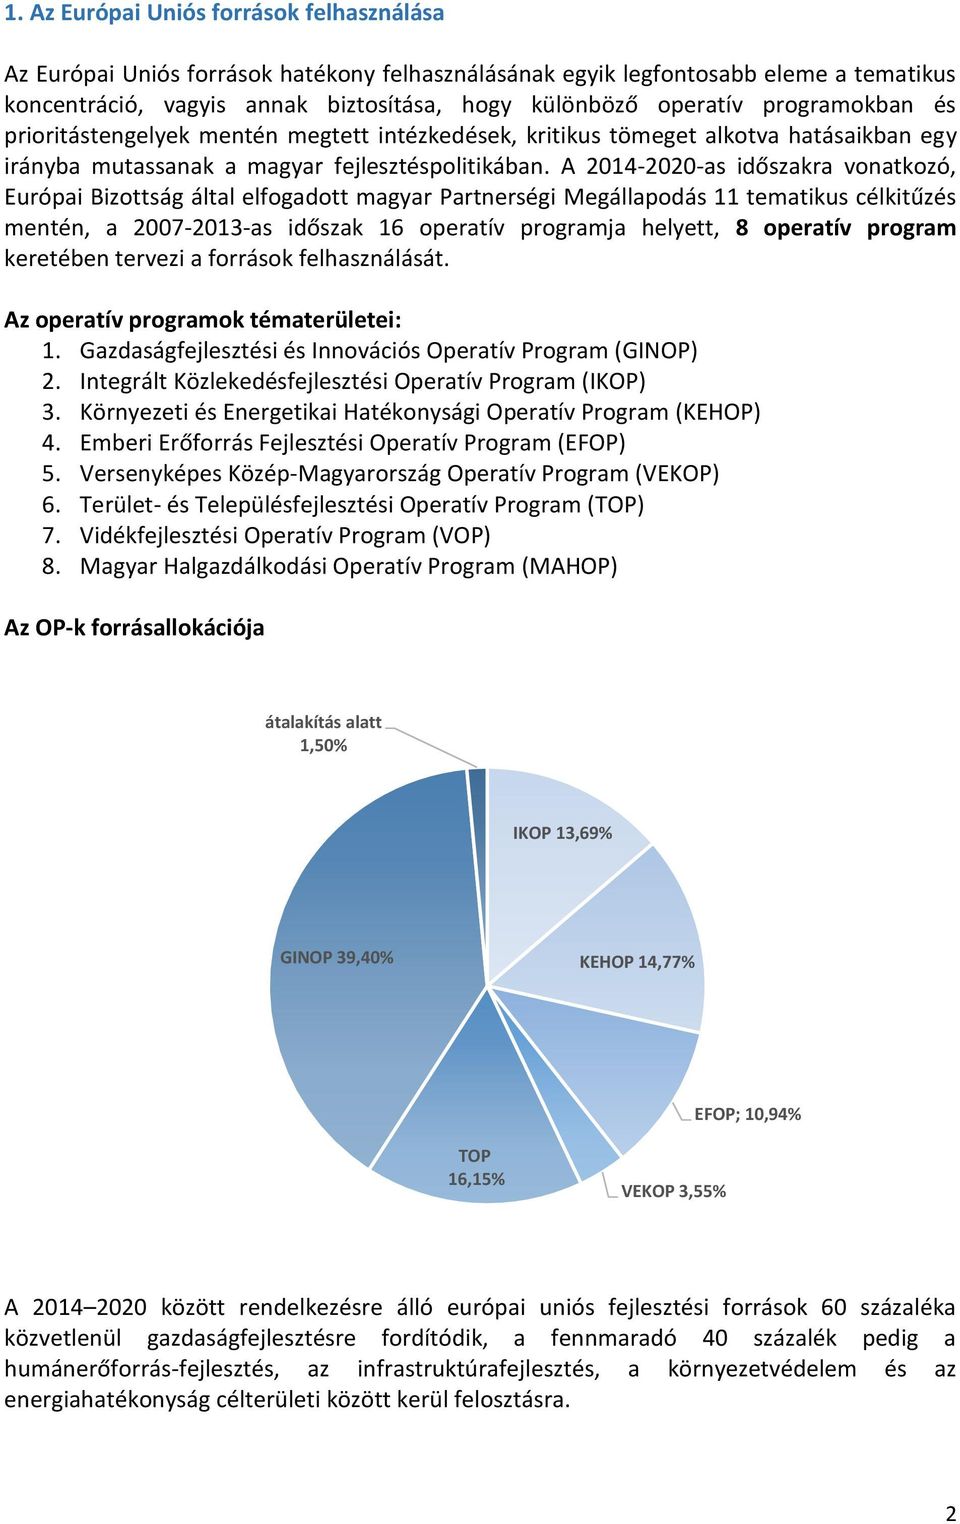 A 2014-2020-as időszakra vonatkozó, Európai Bizottság által elfogadott magyar Partnerségi Megállapodás 11 tematikus célkitűzés mentén, a 2007-2013-as időszak 16 operatív programja helyett, 8 operatív